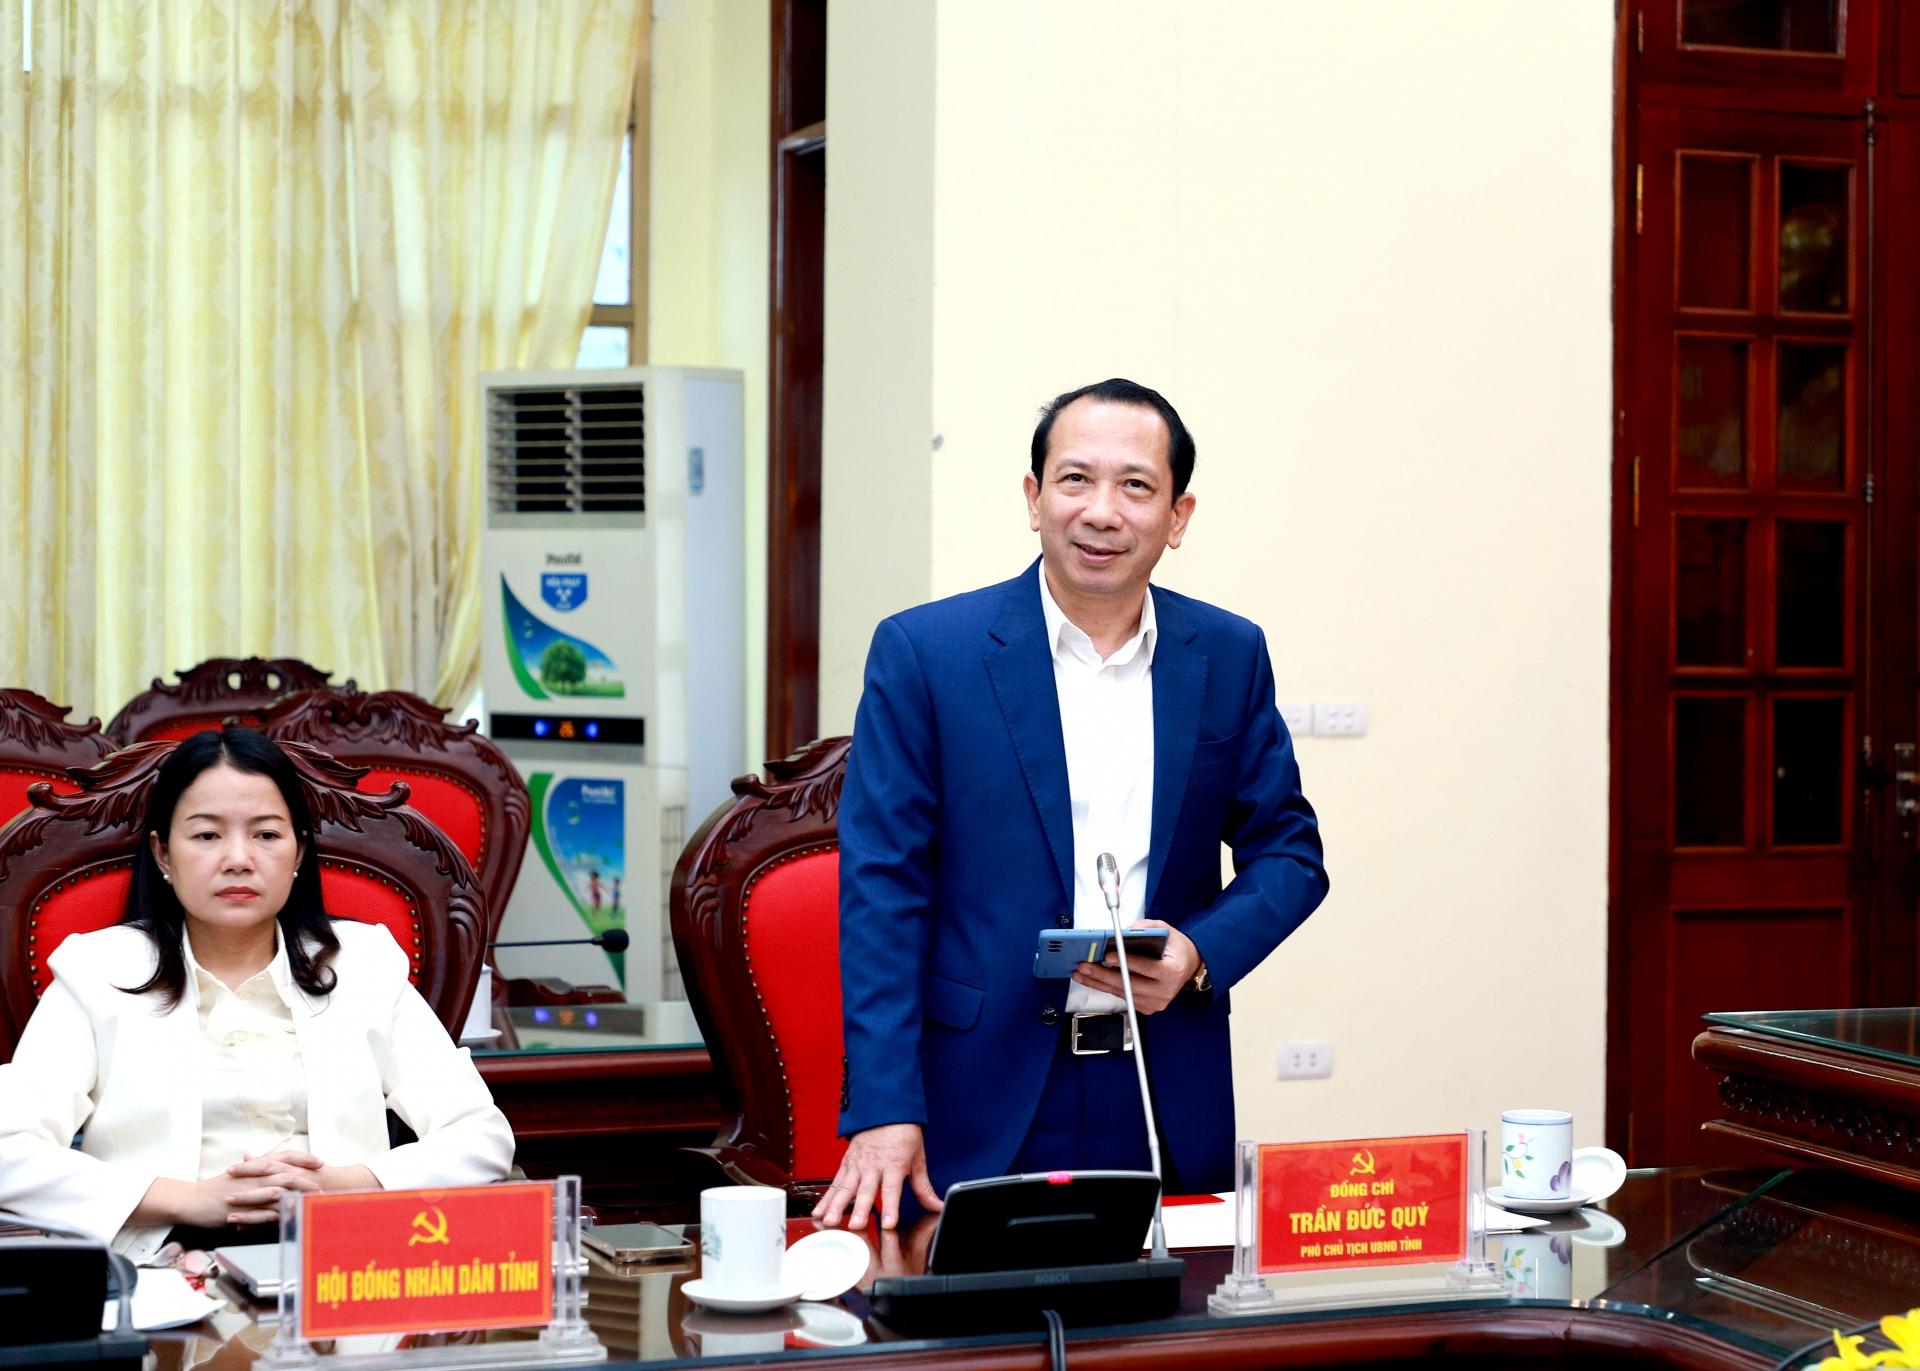 Phó Chủ tịch UBND tỉnh Trần Đức Quý thảo luận tại hội nghị.